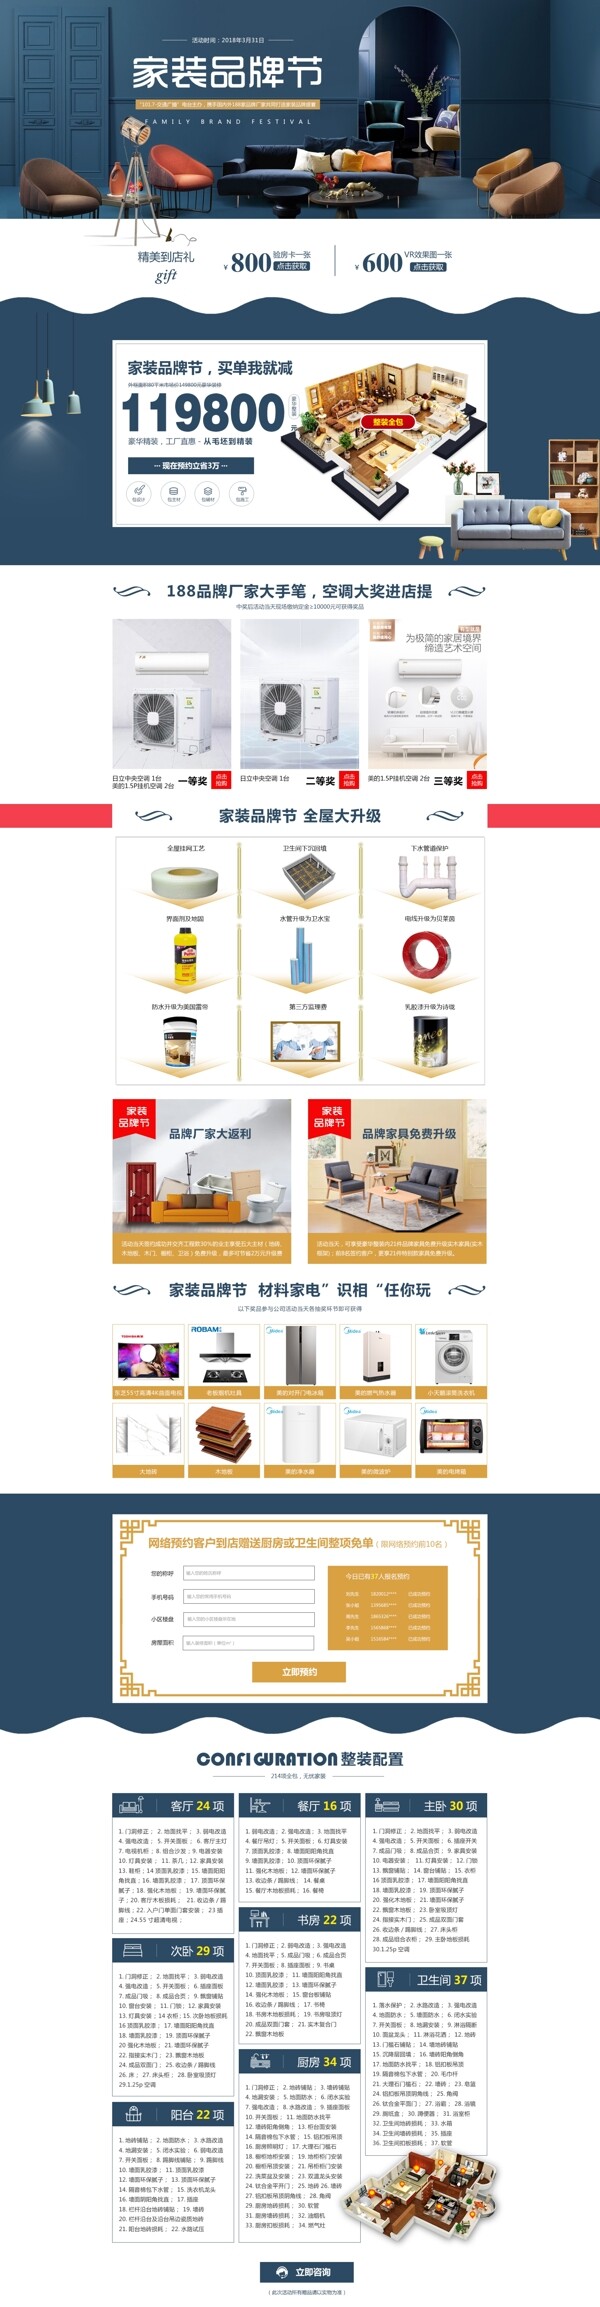 家装品牌节网页设计模板